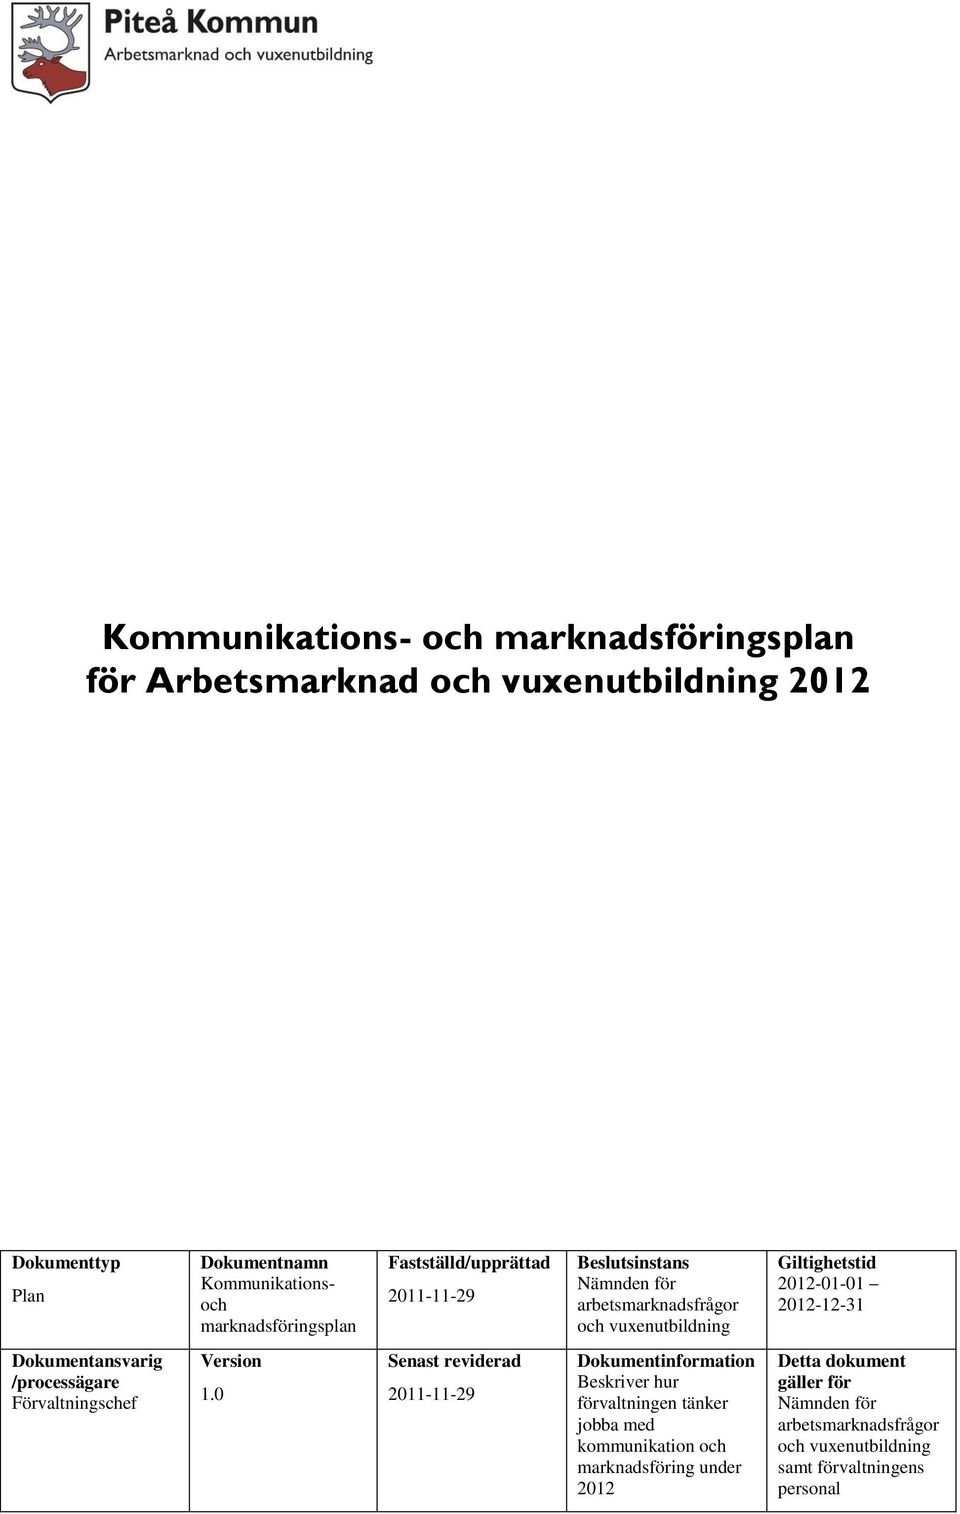 2012-12-31 Dokumentansvarig /processägare Förvaltningschef Version 1.